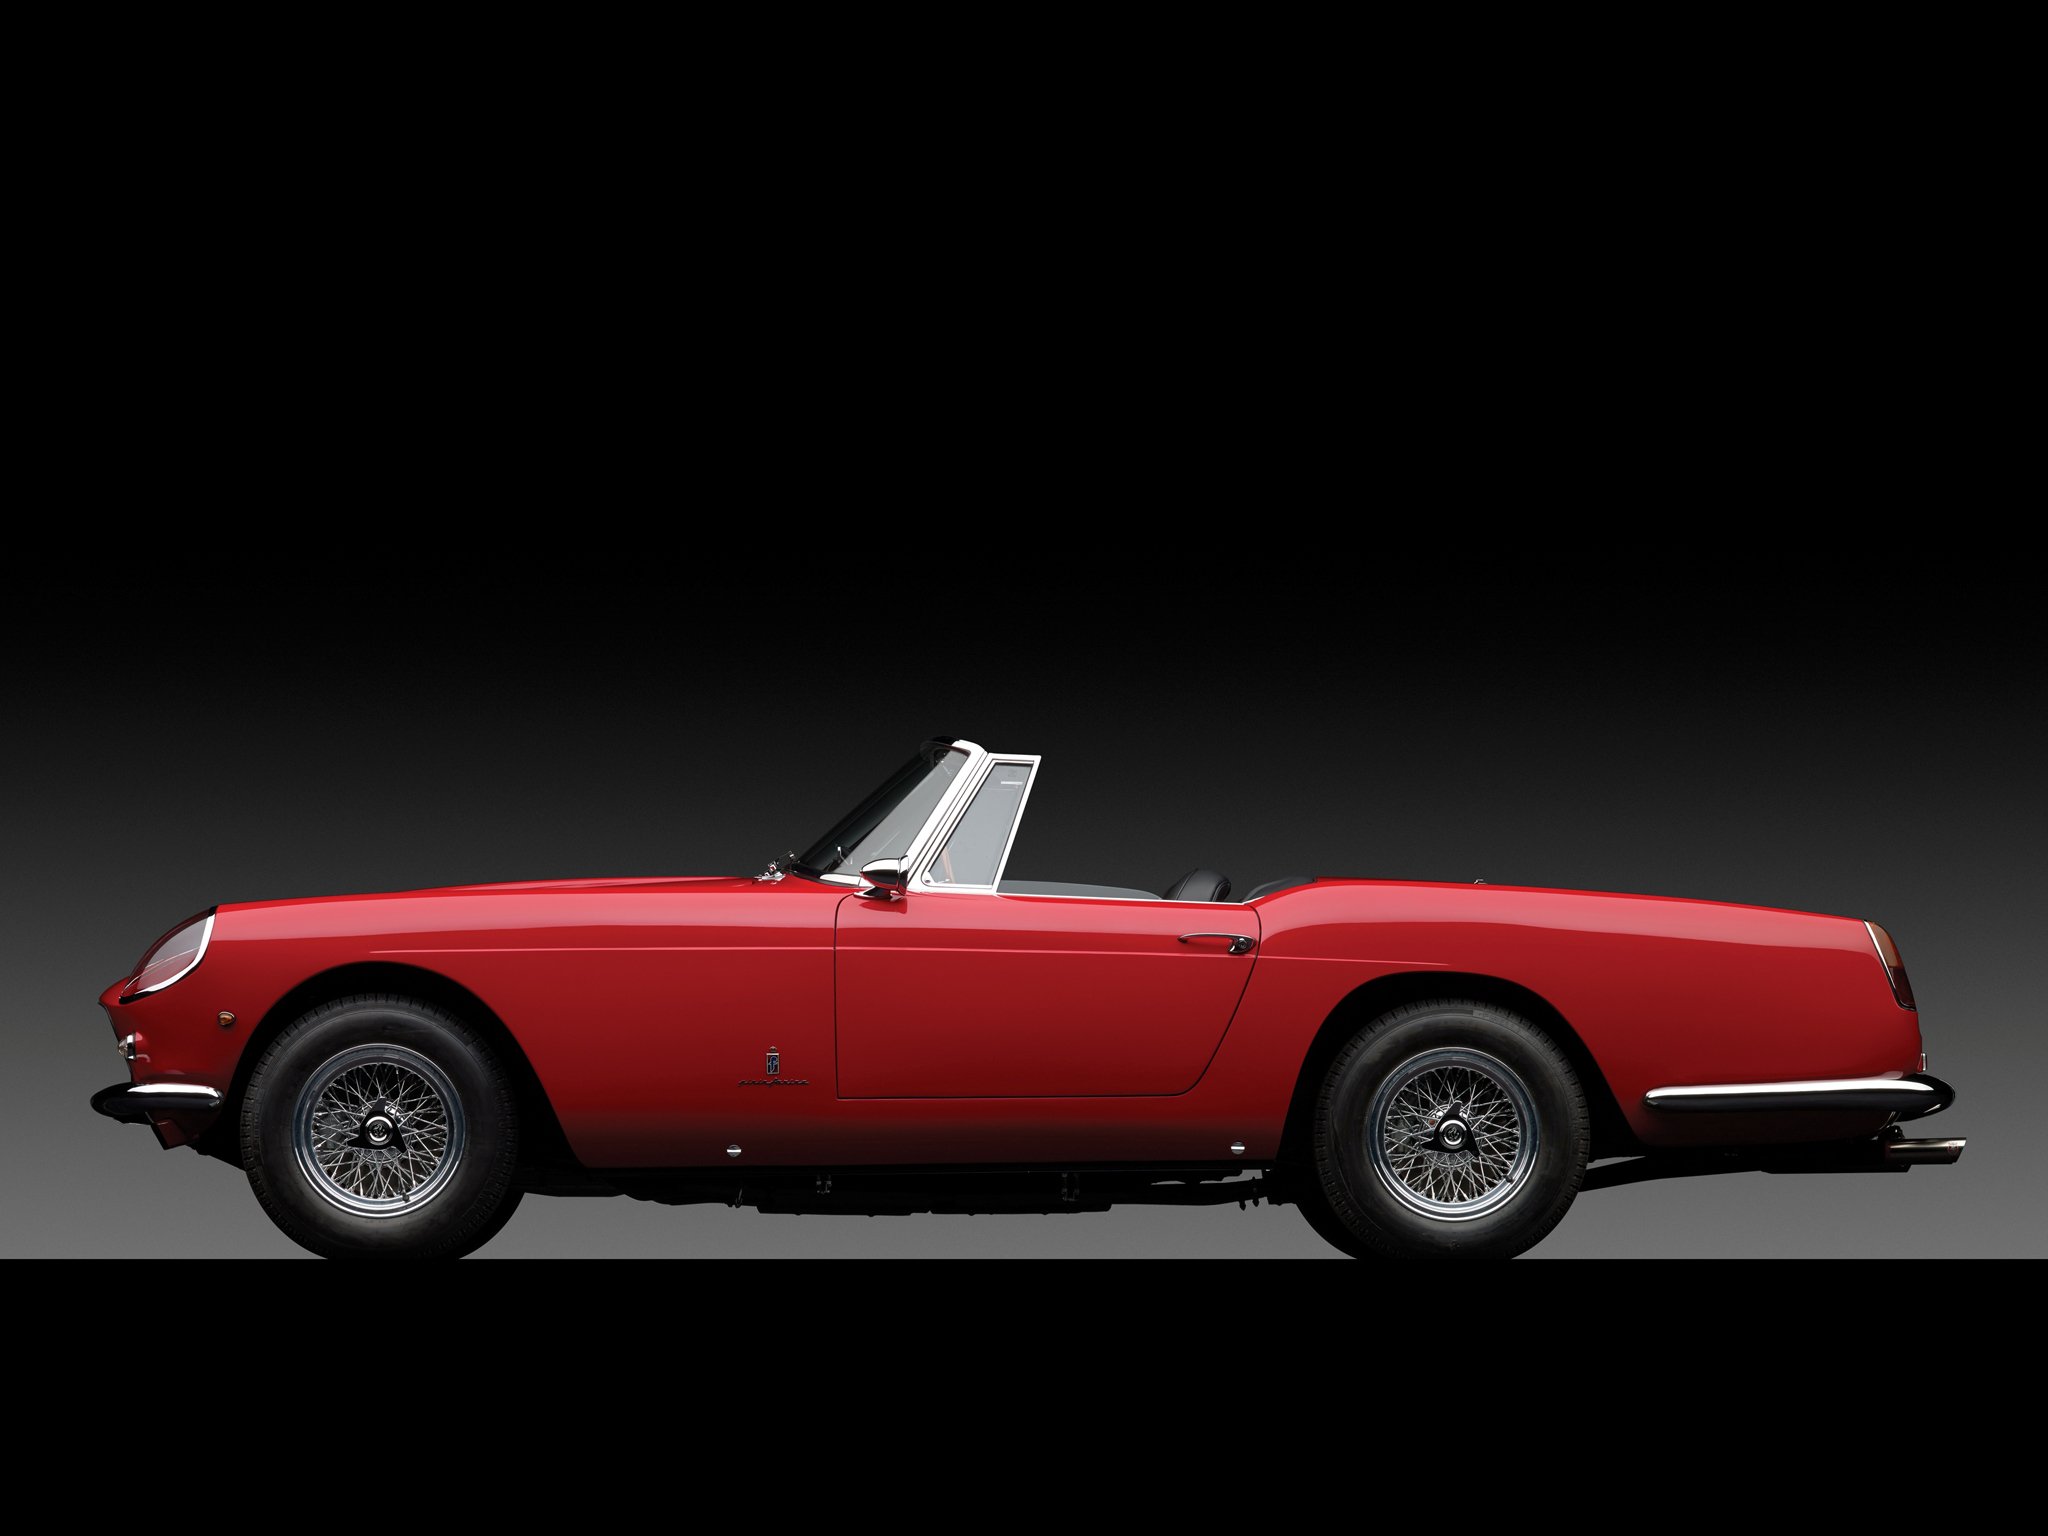 1959 62, Ferrari, 250, G t, Cabriolet, Series ii, Retro, Classic, Supercar, Gd Wallpaper